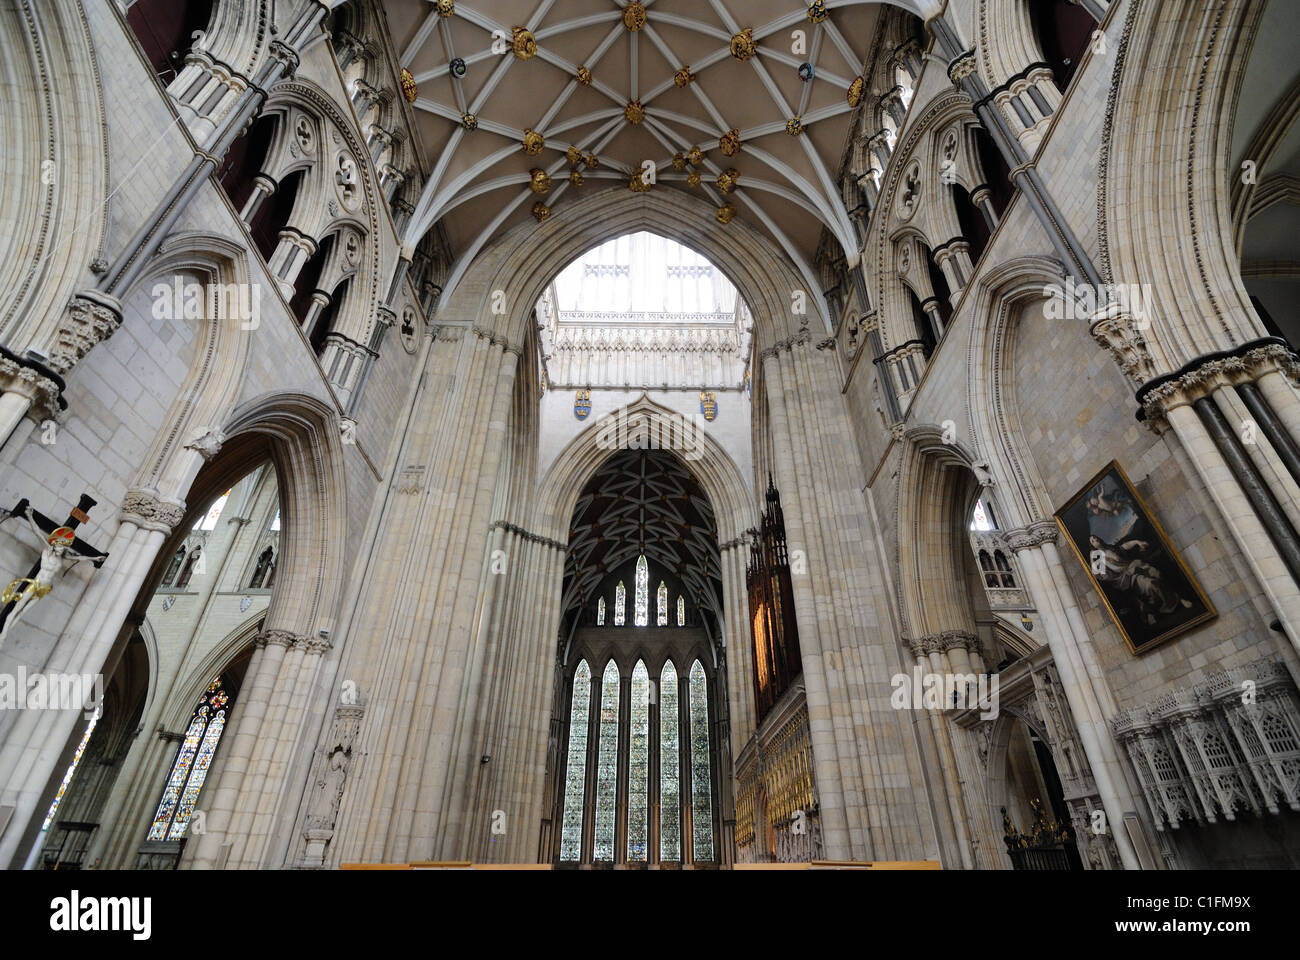 Interno della cattedrale di York Minster, una pietra miliare nella cattedrale di York, Inghilterra. Foto Stock